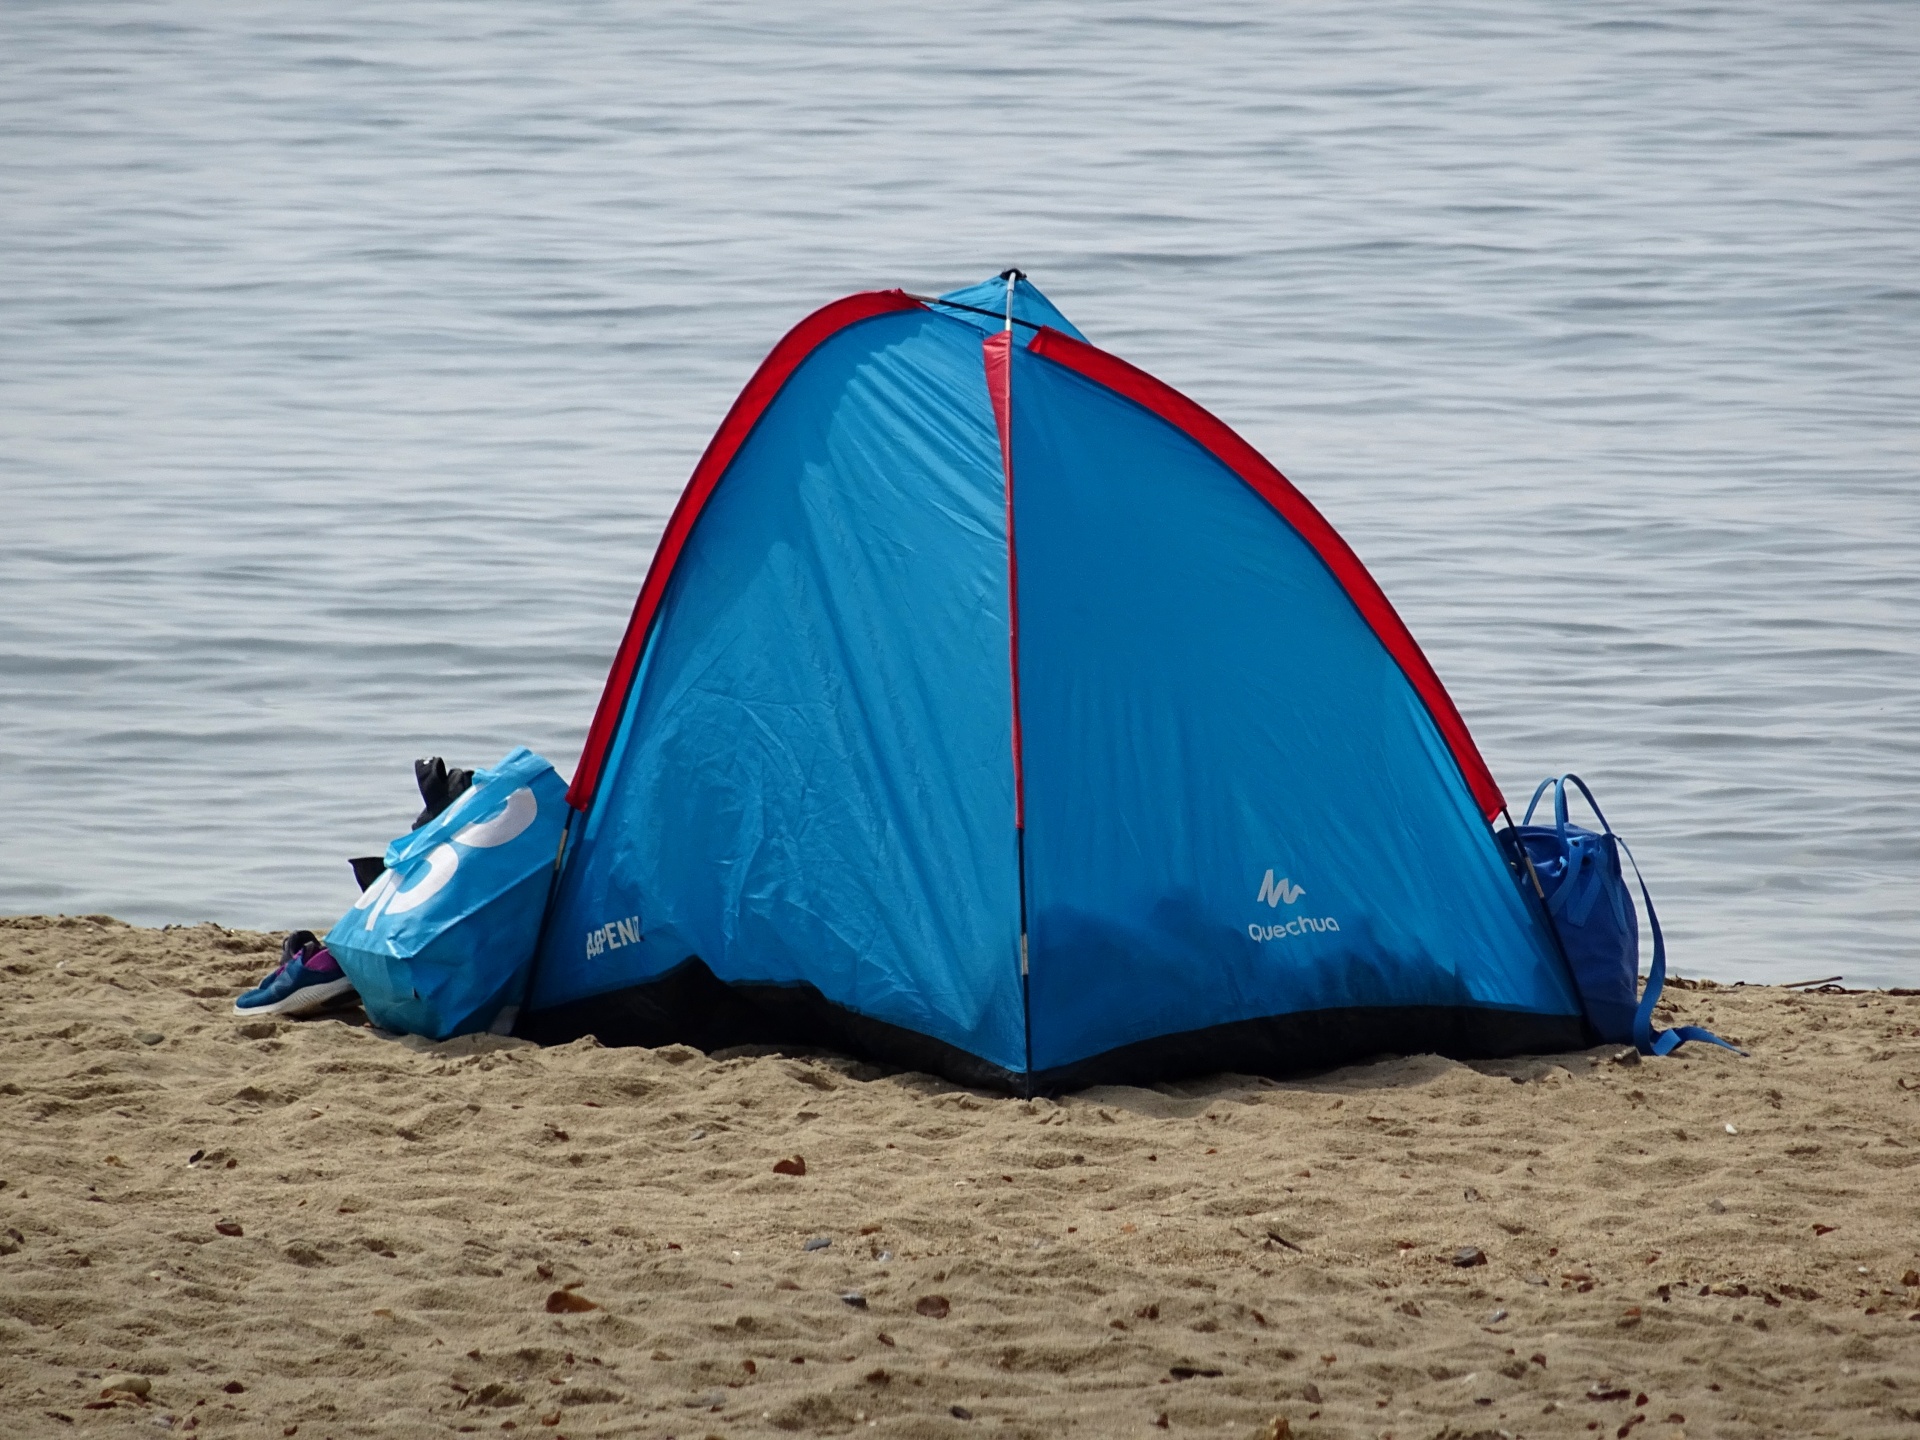 Tent op het strand met uitzicht op de oc